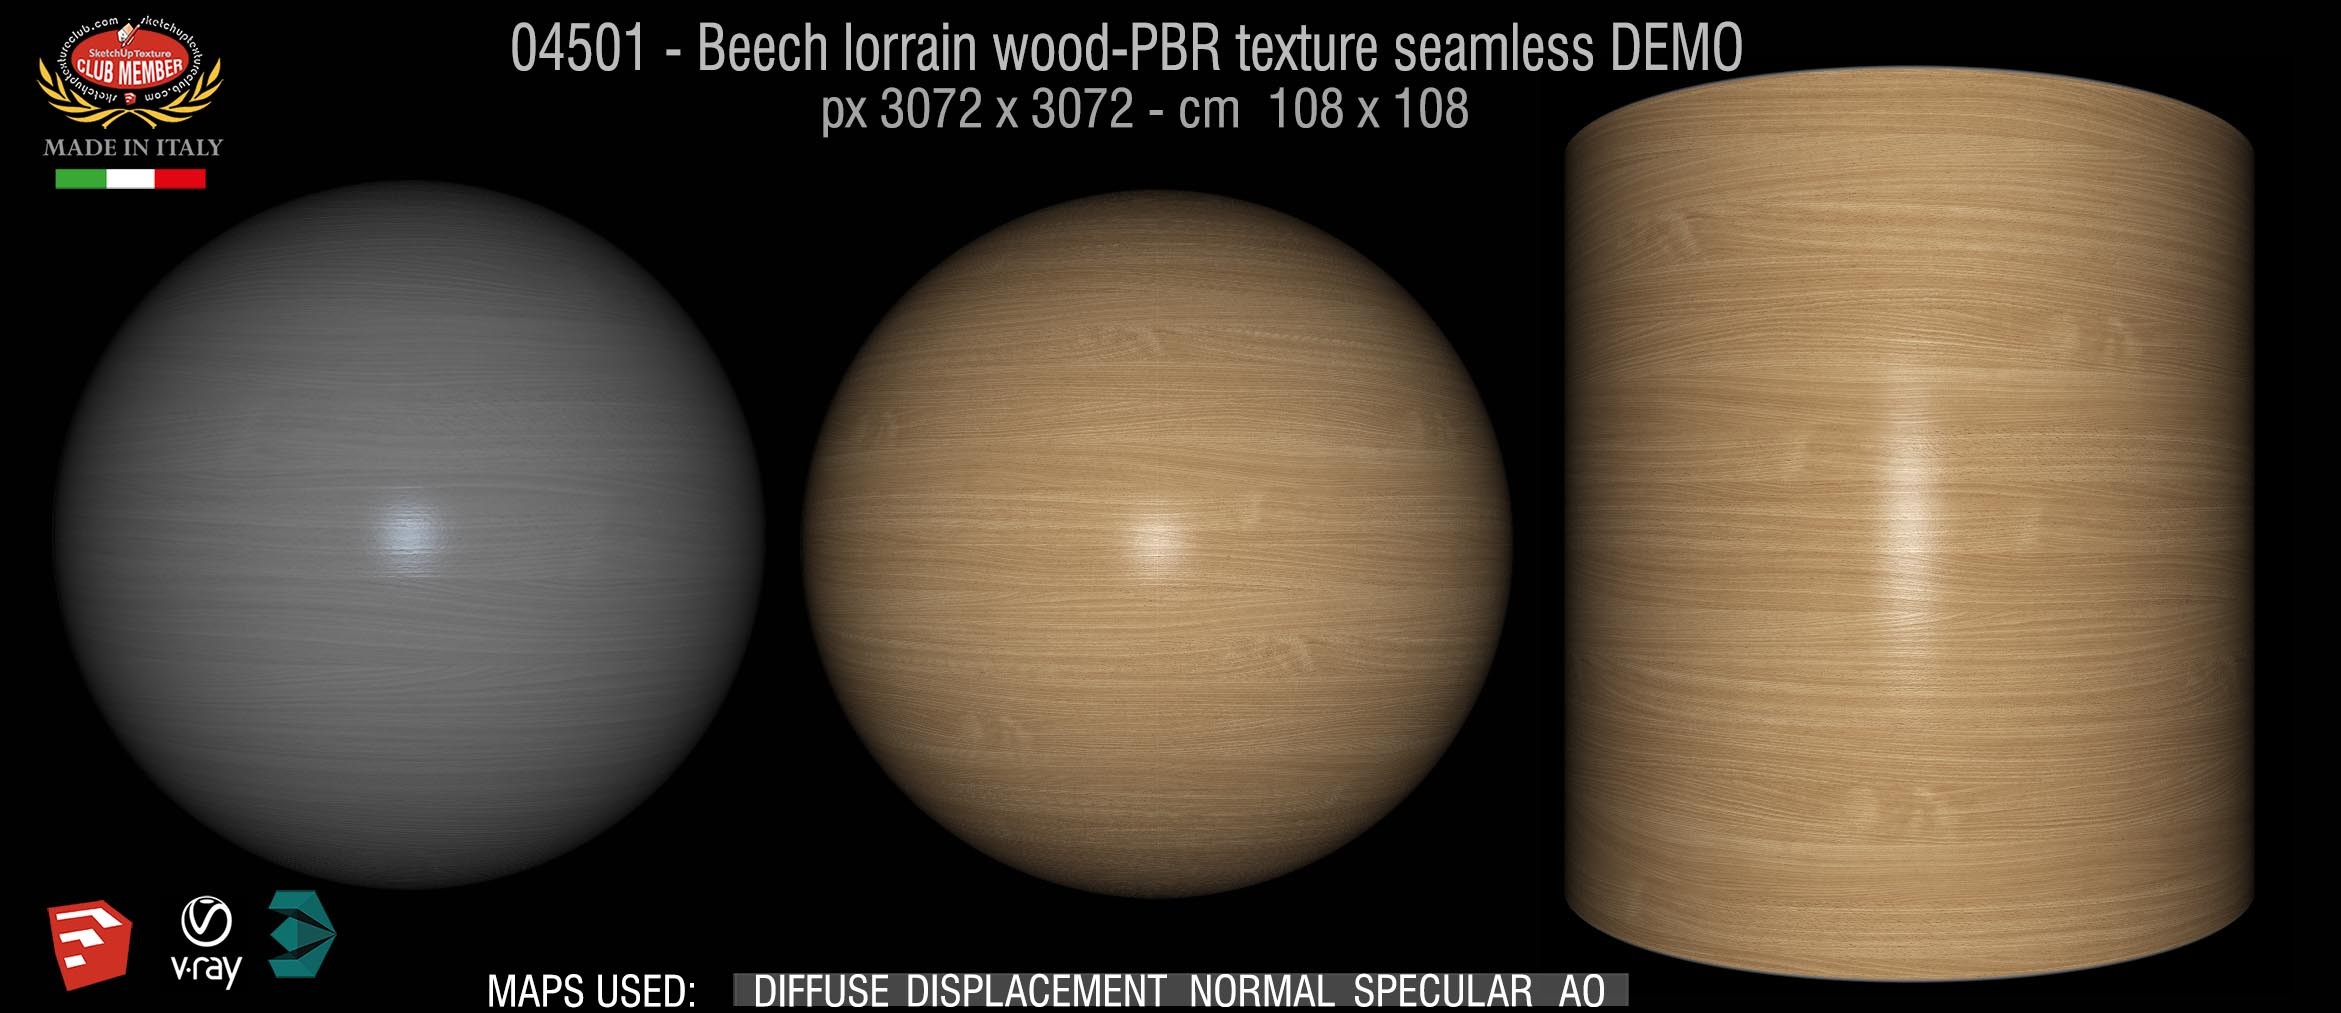 04501 Beech lorrain wood-PBR texture seamless DEMO